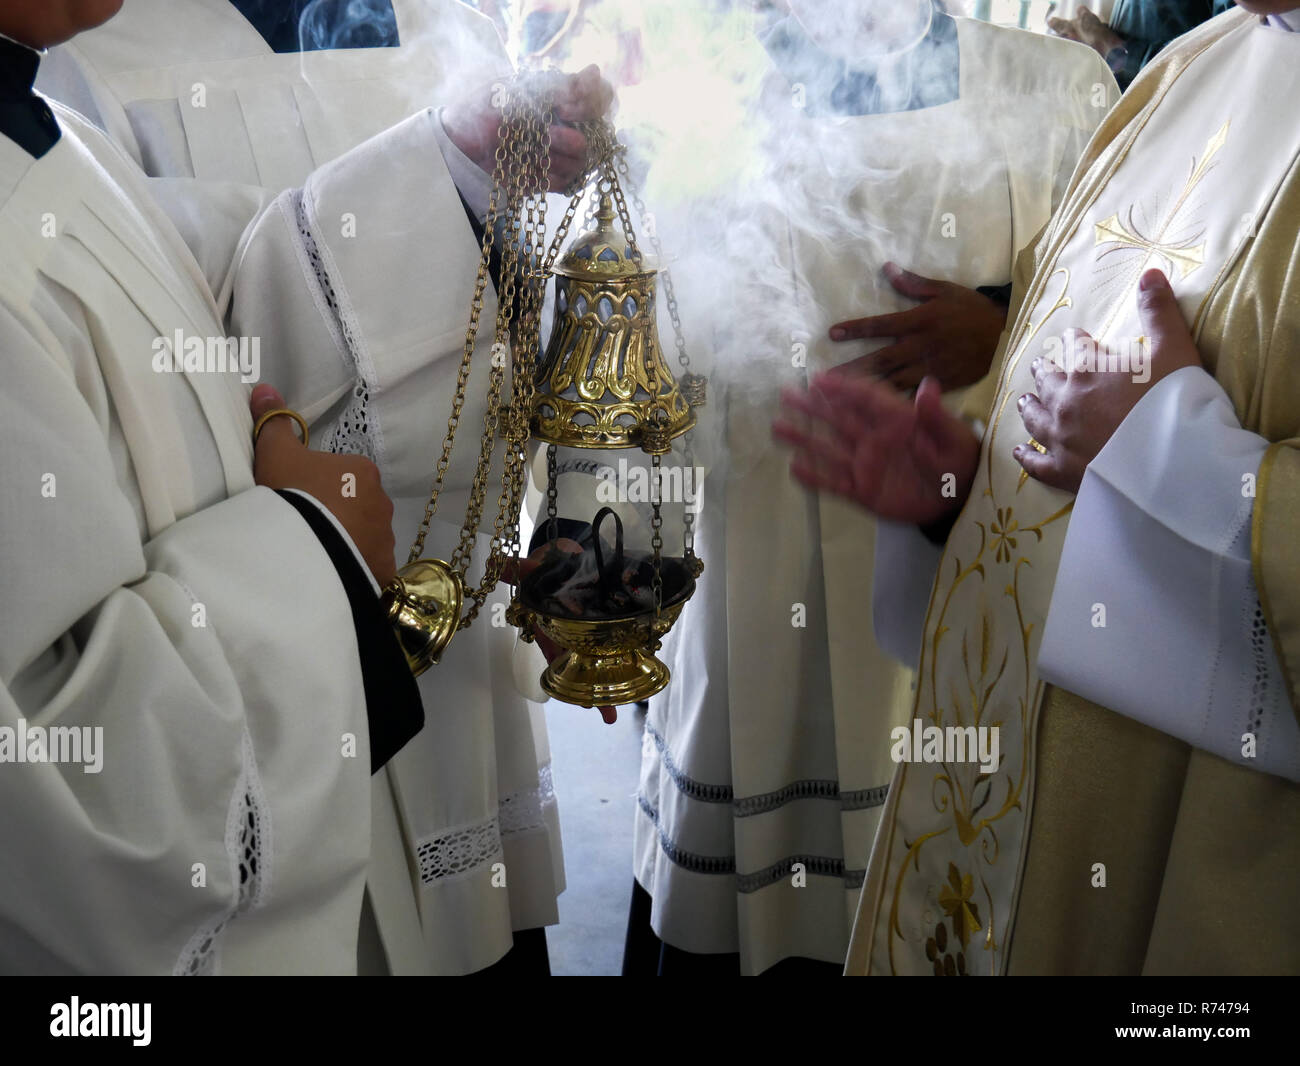 Un sacerdote benedizione l'incenso davanti a una processione su una messa cattolica con tutti gli ornamenti e non le persone riconoscibili Foto Stock